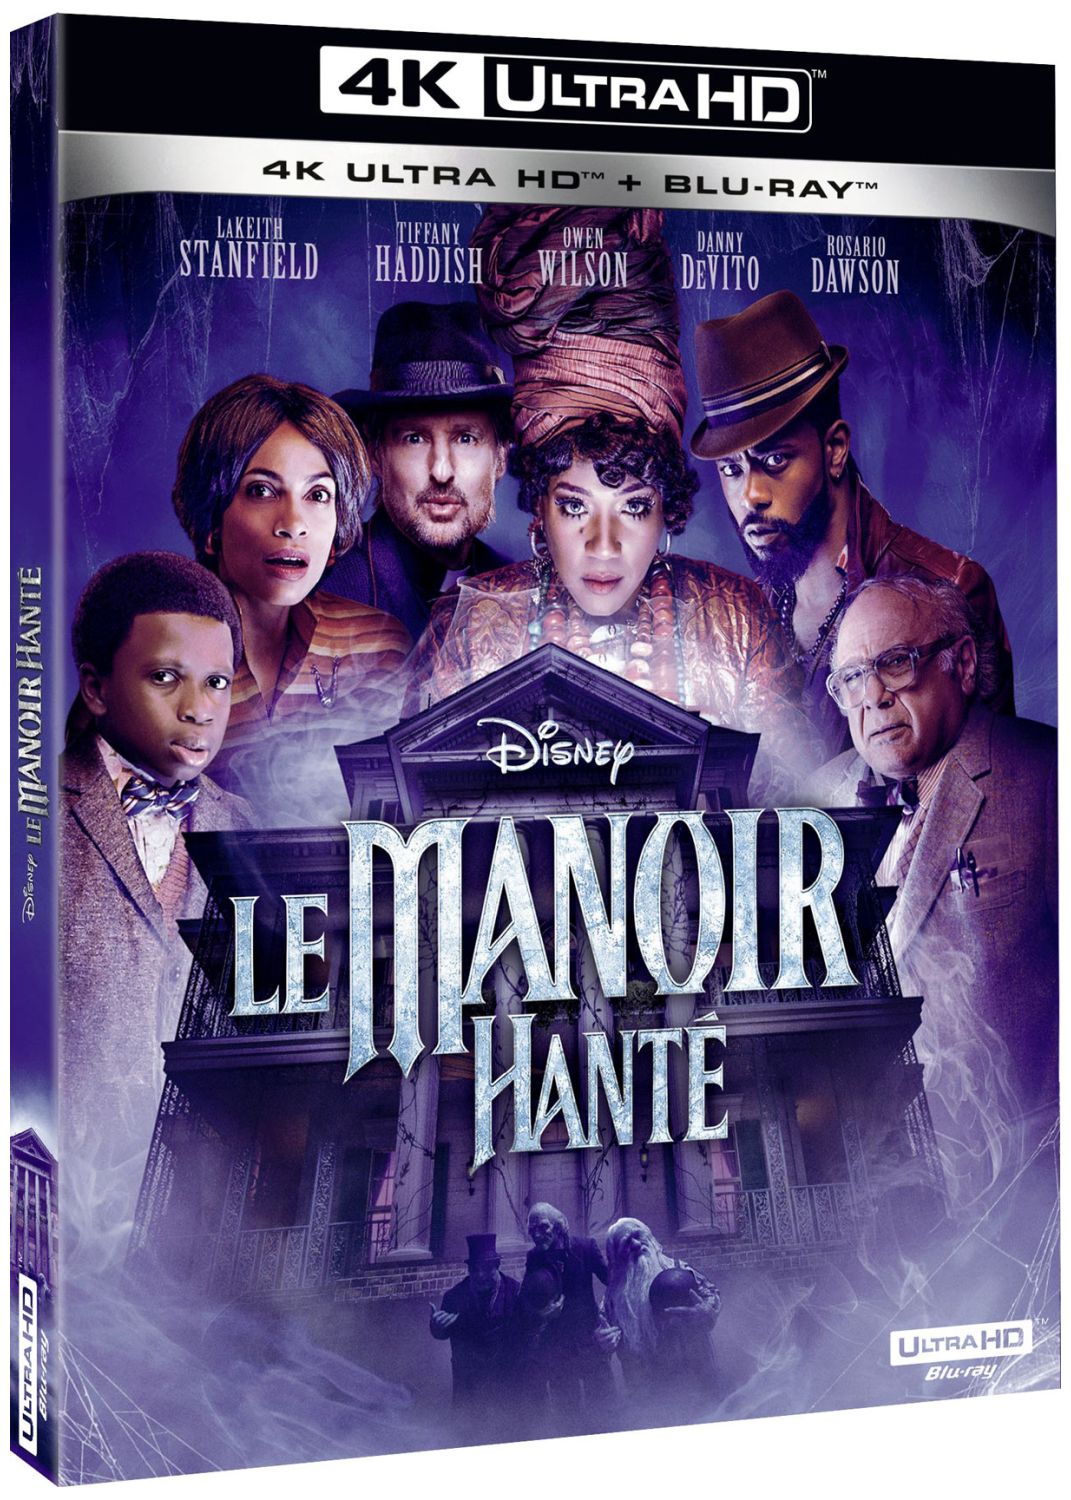 Le Manoir hanté [DVD/Blu-ray/4K UHD à la location]